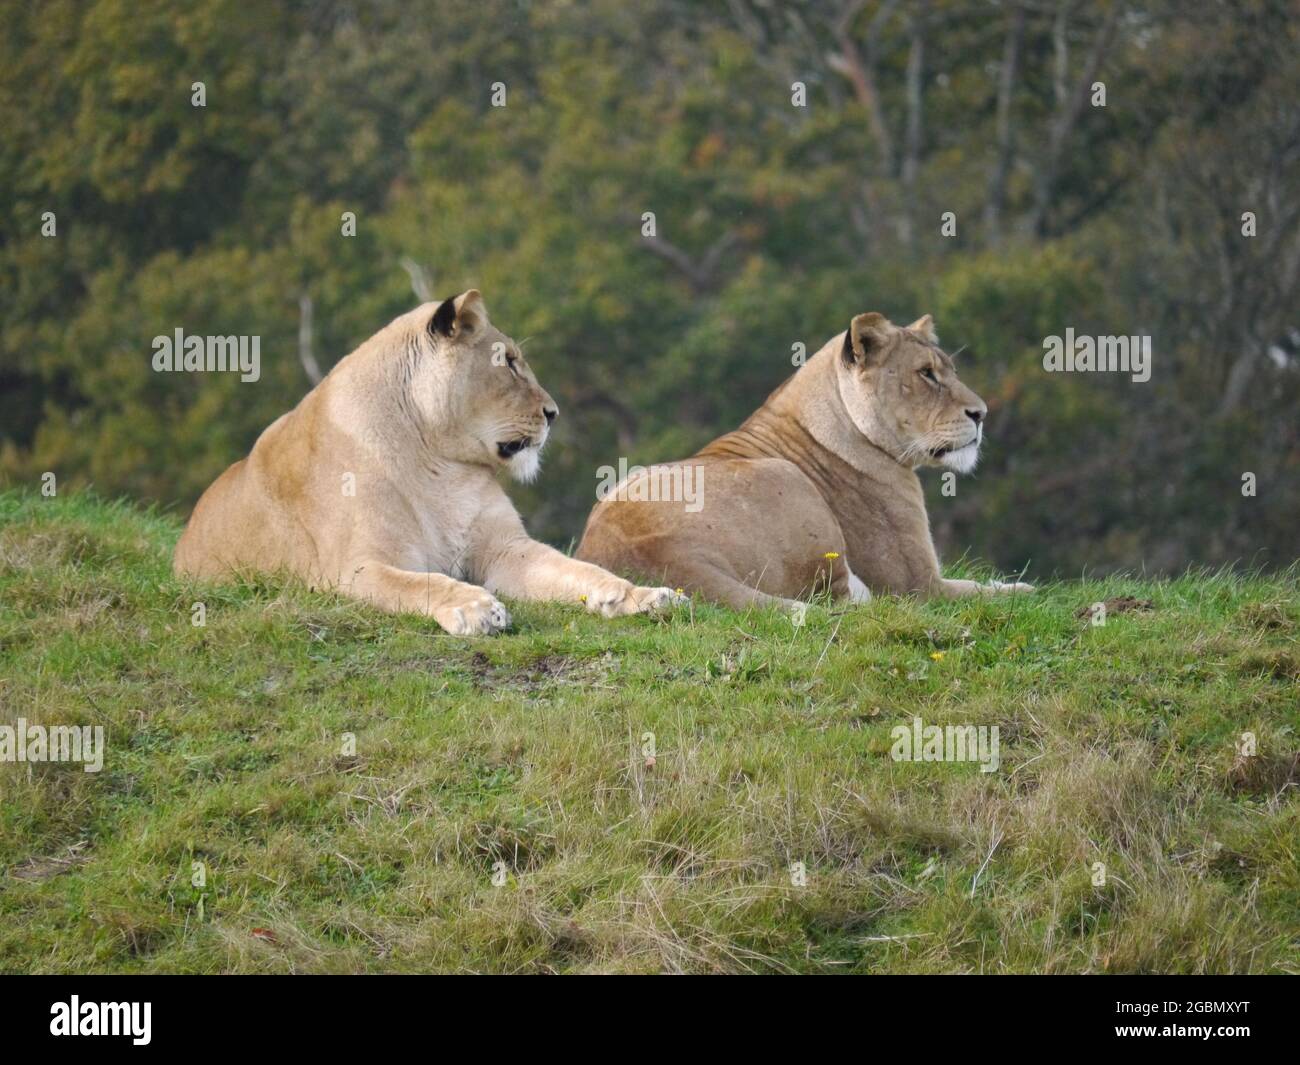 Foto de leones asiáticos femeninos sentados en el suelo con una selva borrosa en el fondo Foto de stock